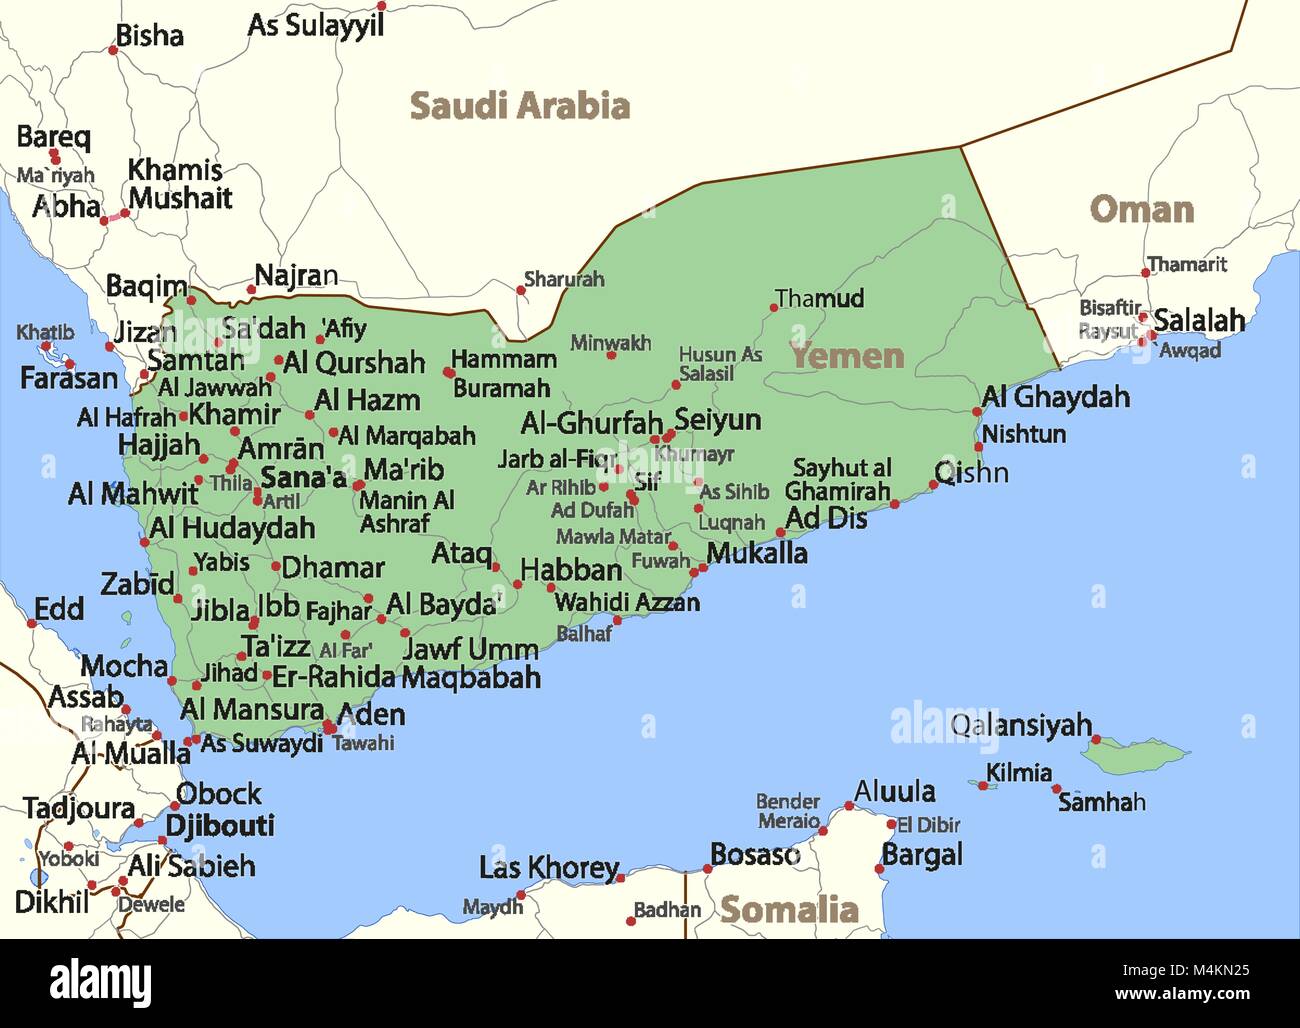 Mappa di Yemen. Mostra i confini, nomi di località e strade. Le etichette in inglese dove possibile. Proiezione: proiezione di Mercatore. Illustrazione Vettoriale